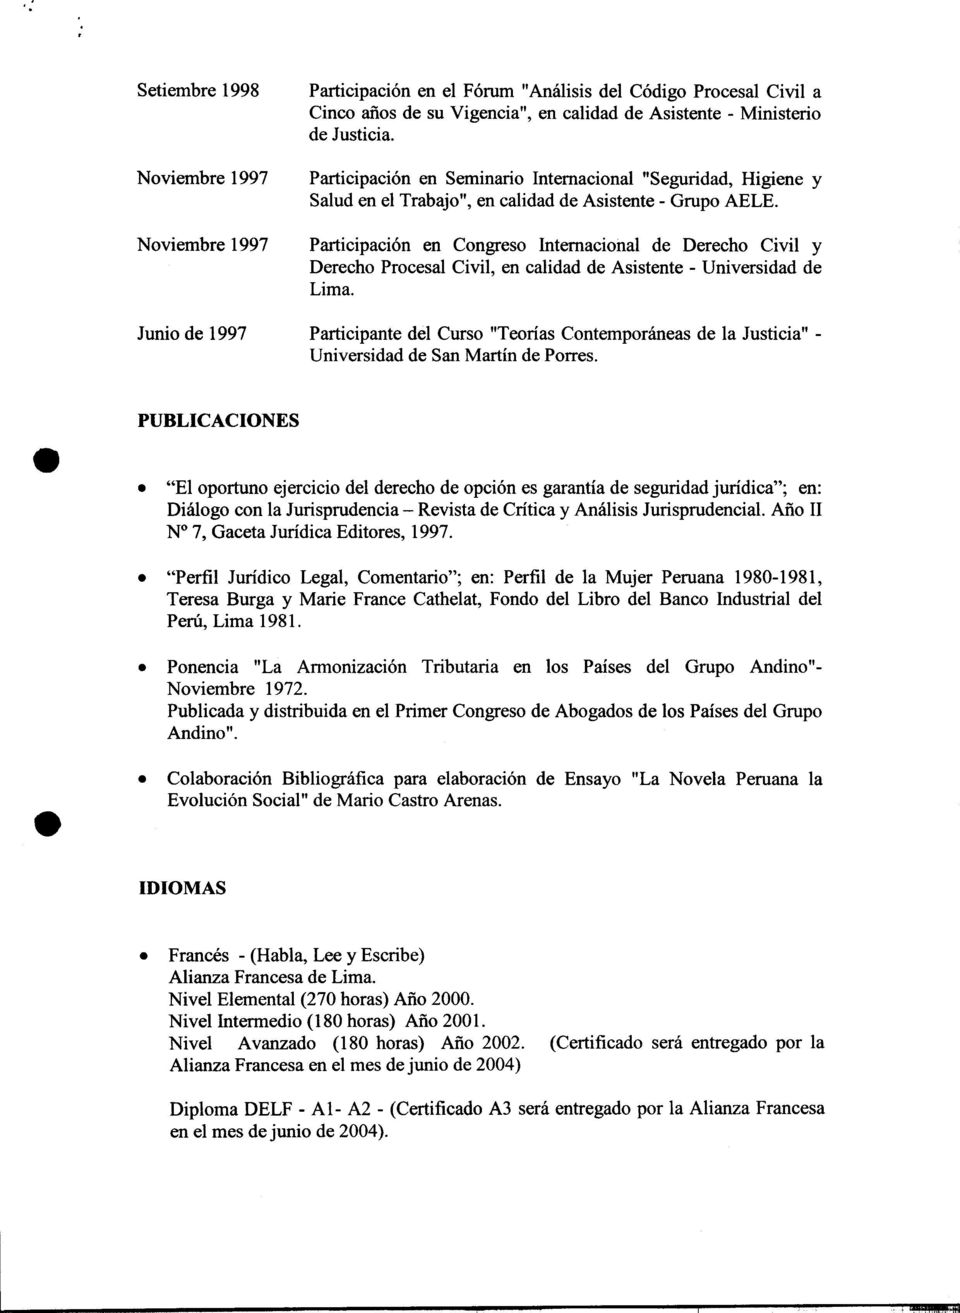 Noviembre 1997 Participación en Congreso Internacional de Derecho Civil y Derecho Procesal Civil, en calidad de Asistente -Universidad de Lima.